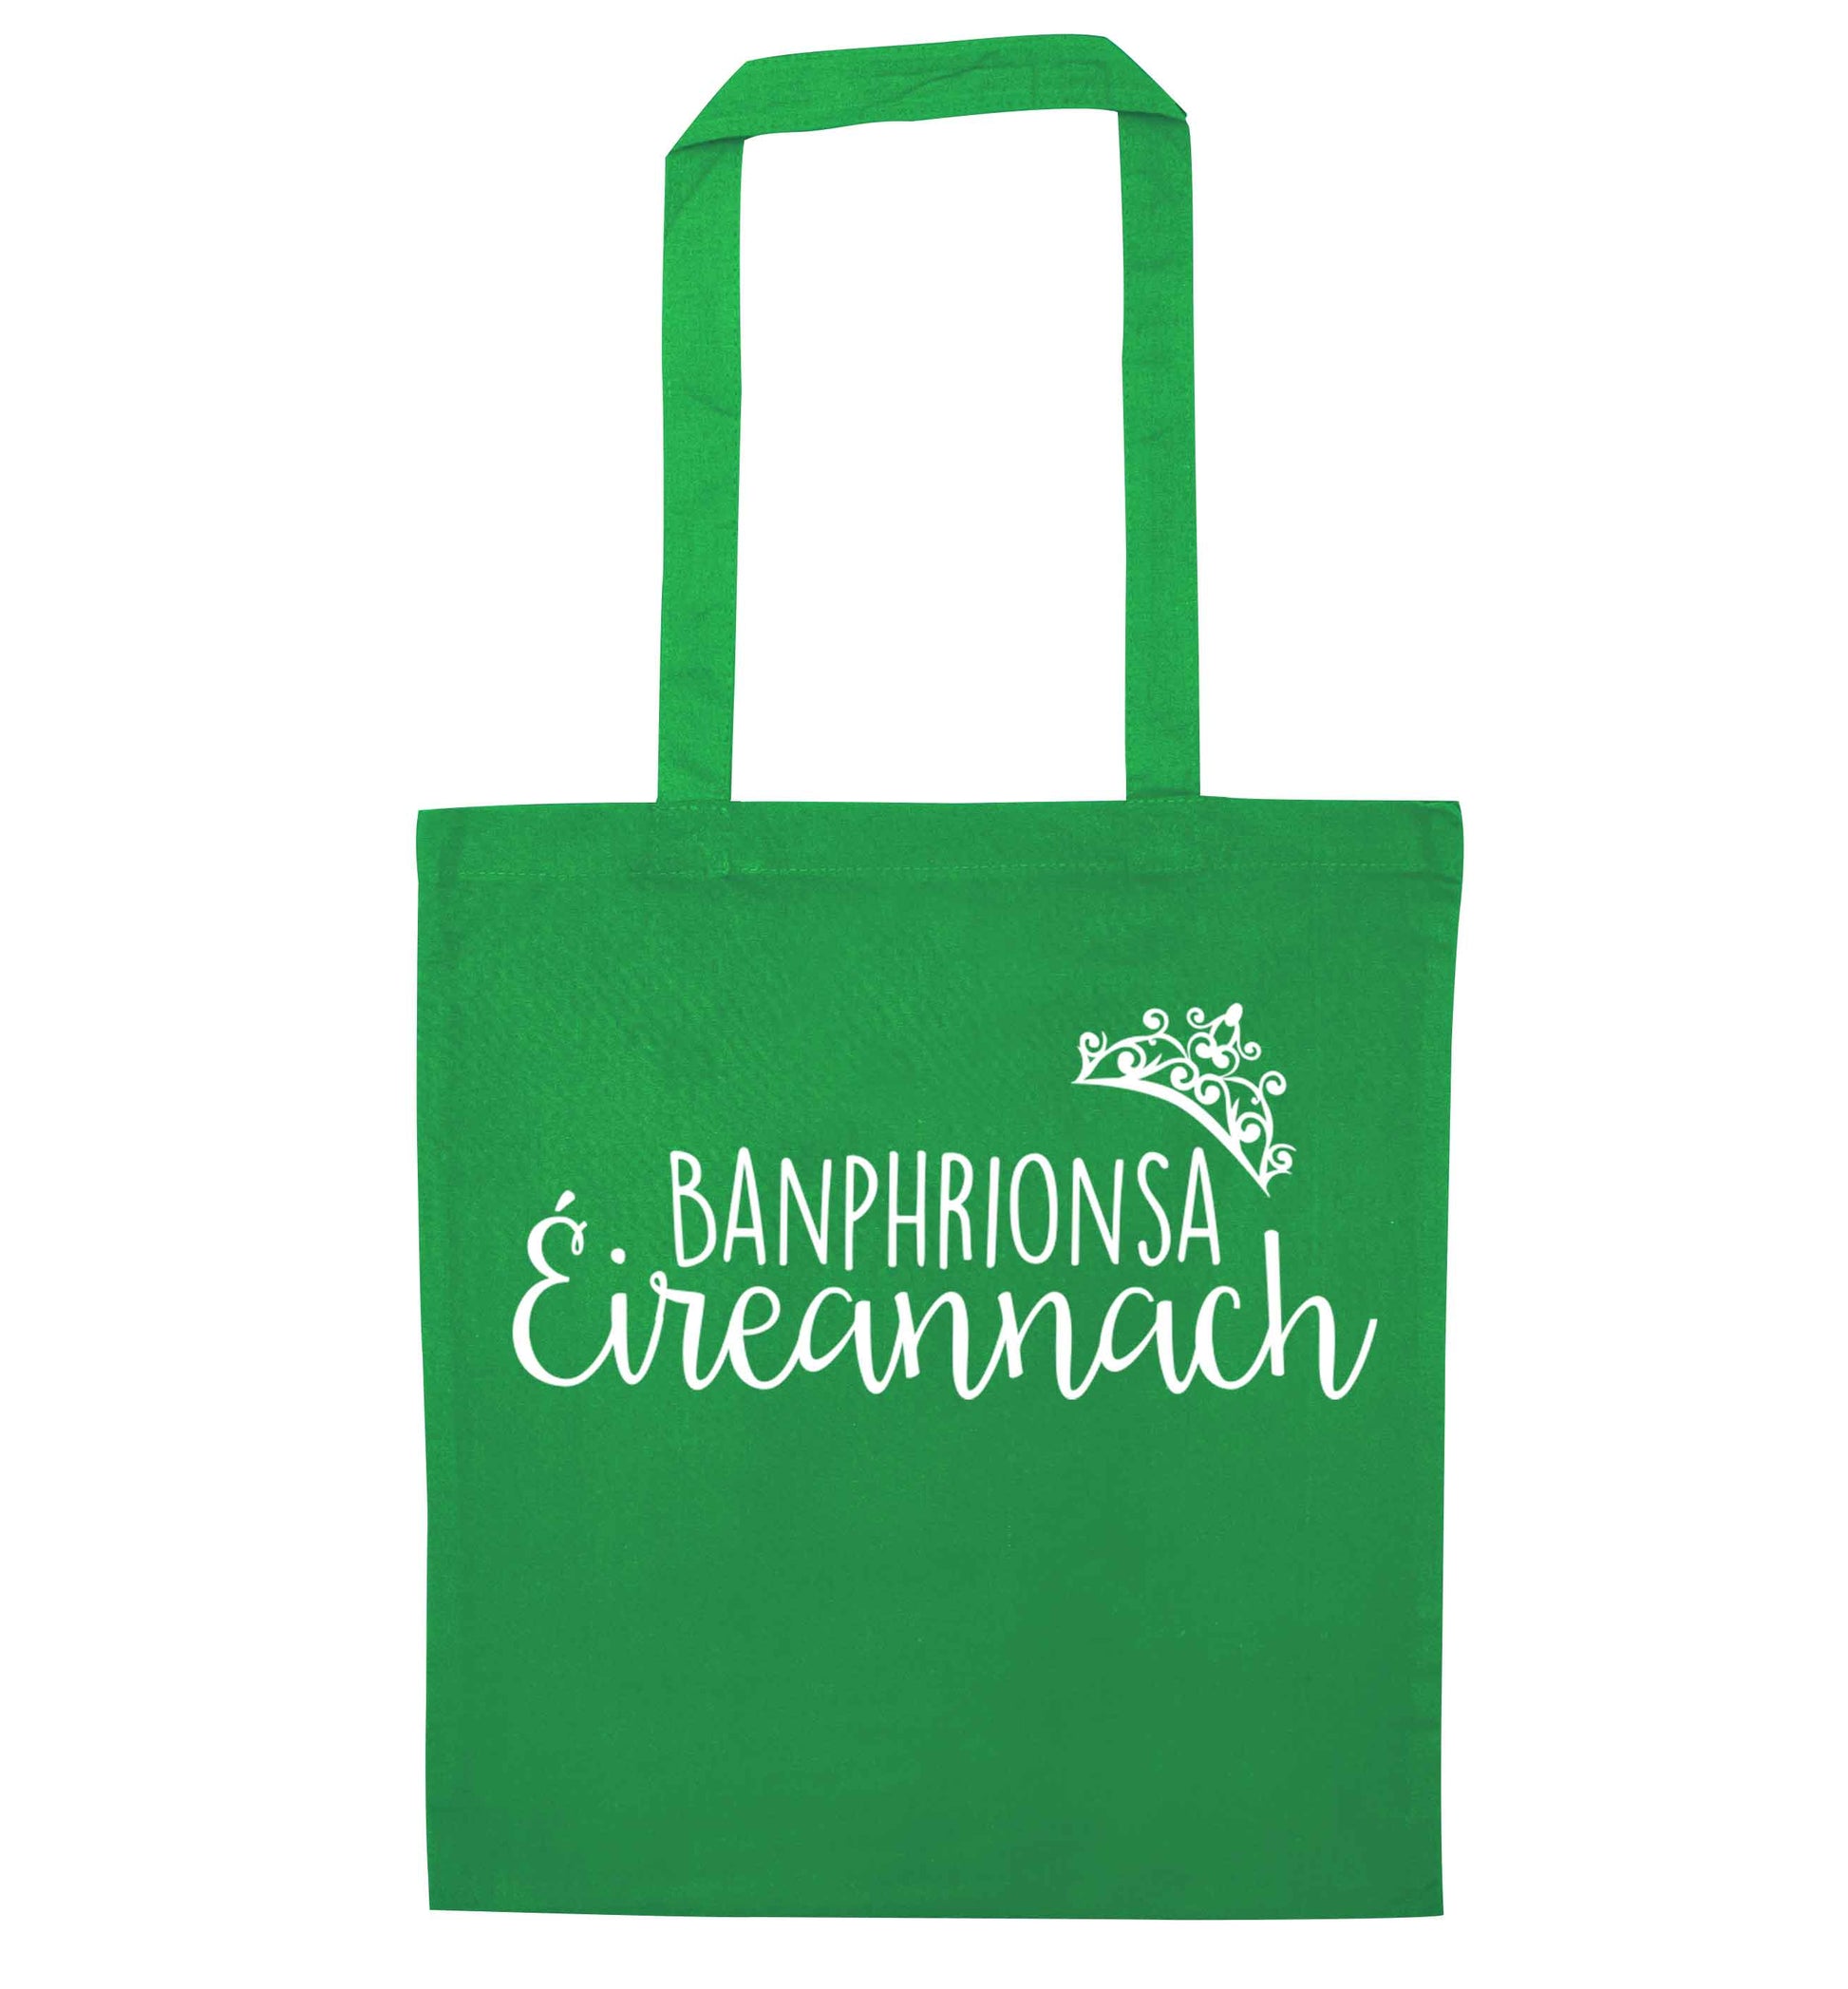 Banphrionsa eireannach green tote bag